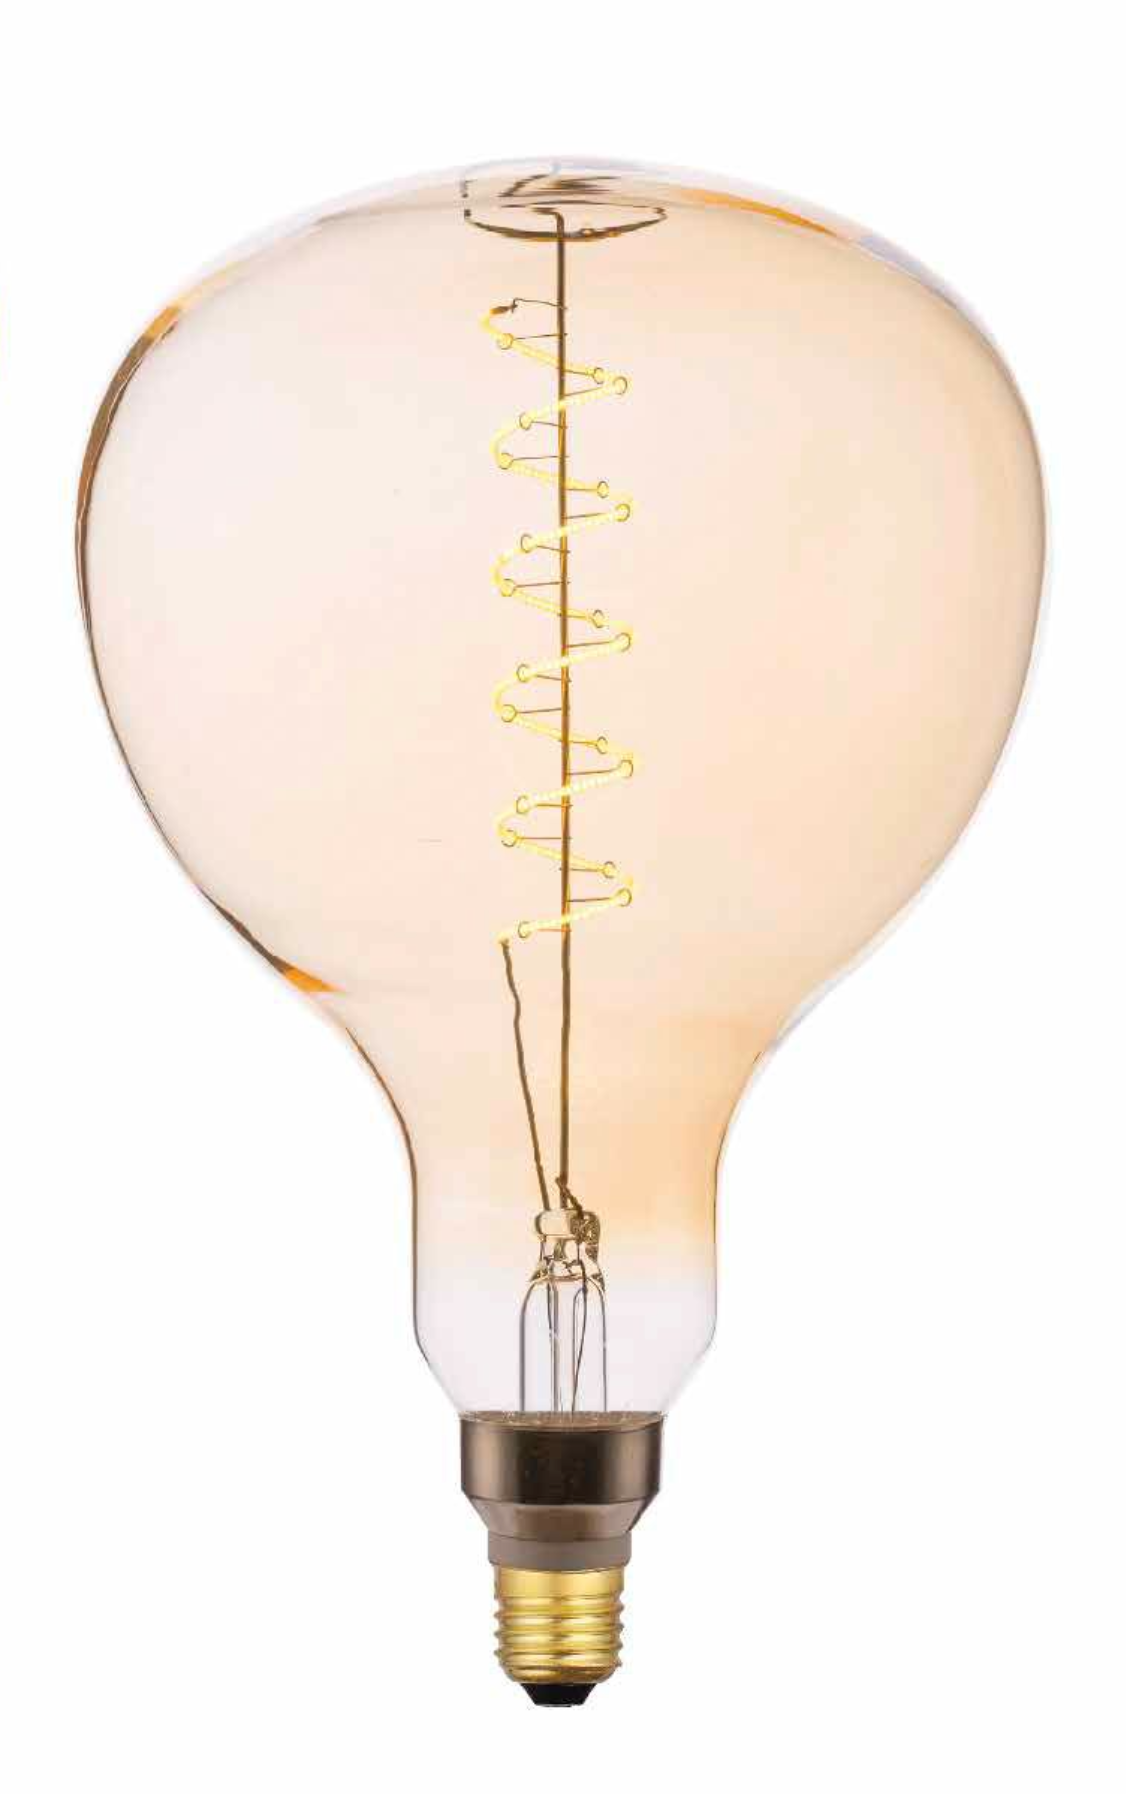 Oversized Vintage Globe Lamp Warm White 4W LED E27 - ID 12674